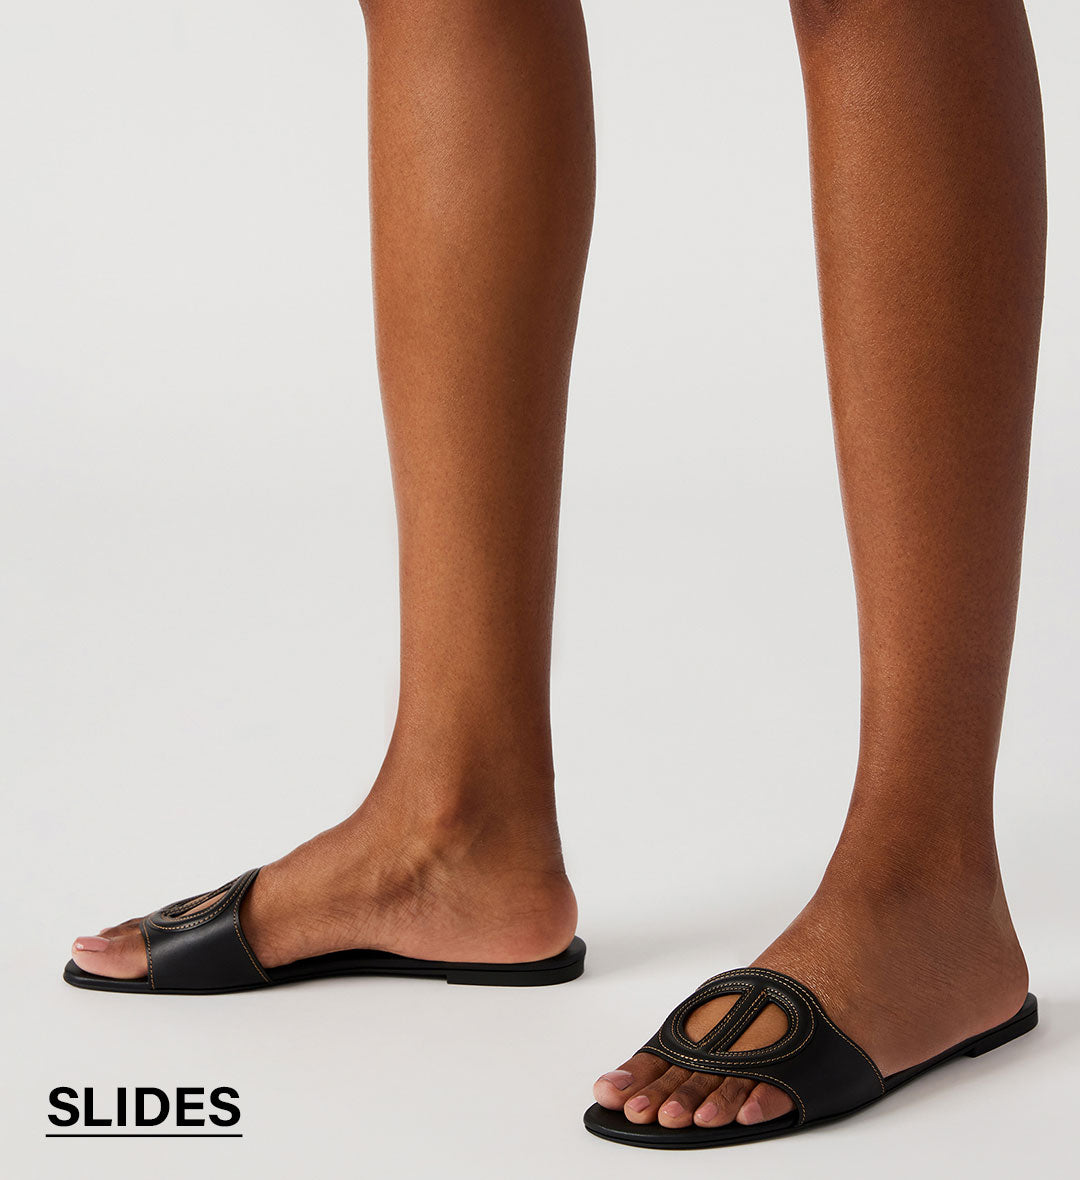 Flip-Flops for Women